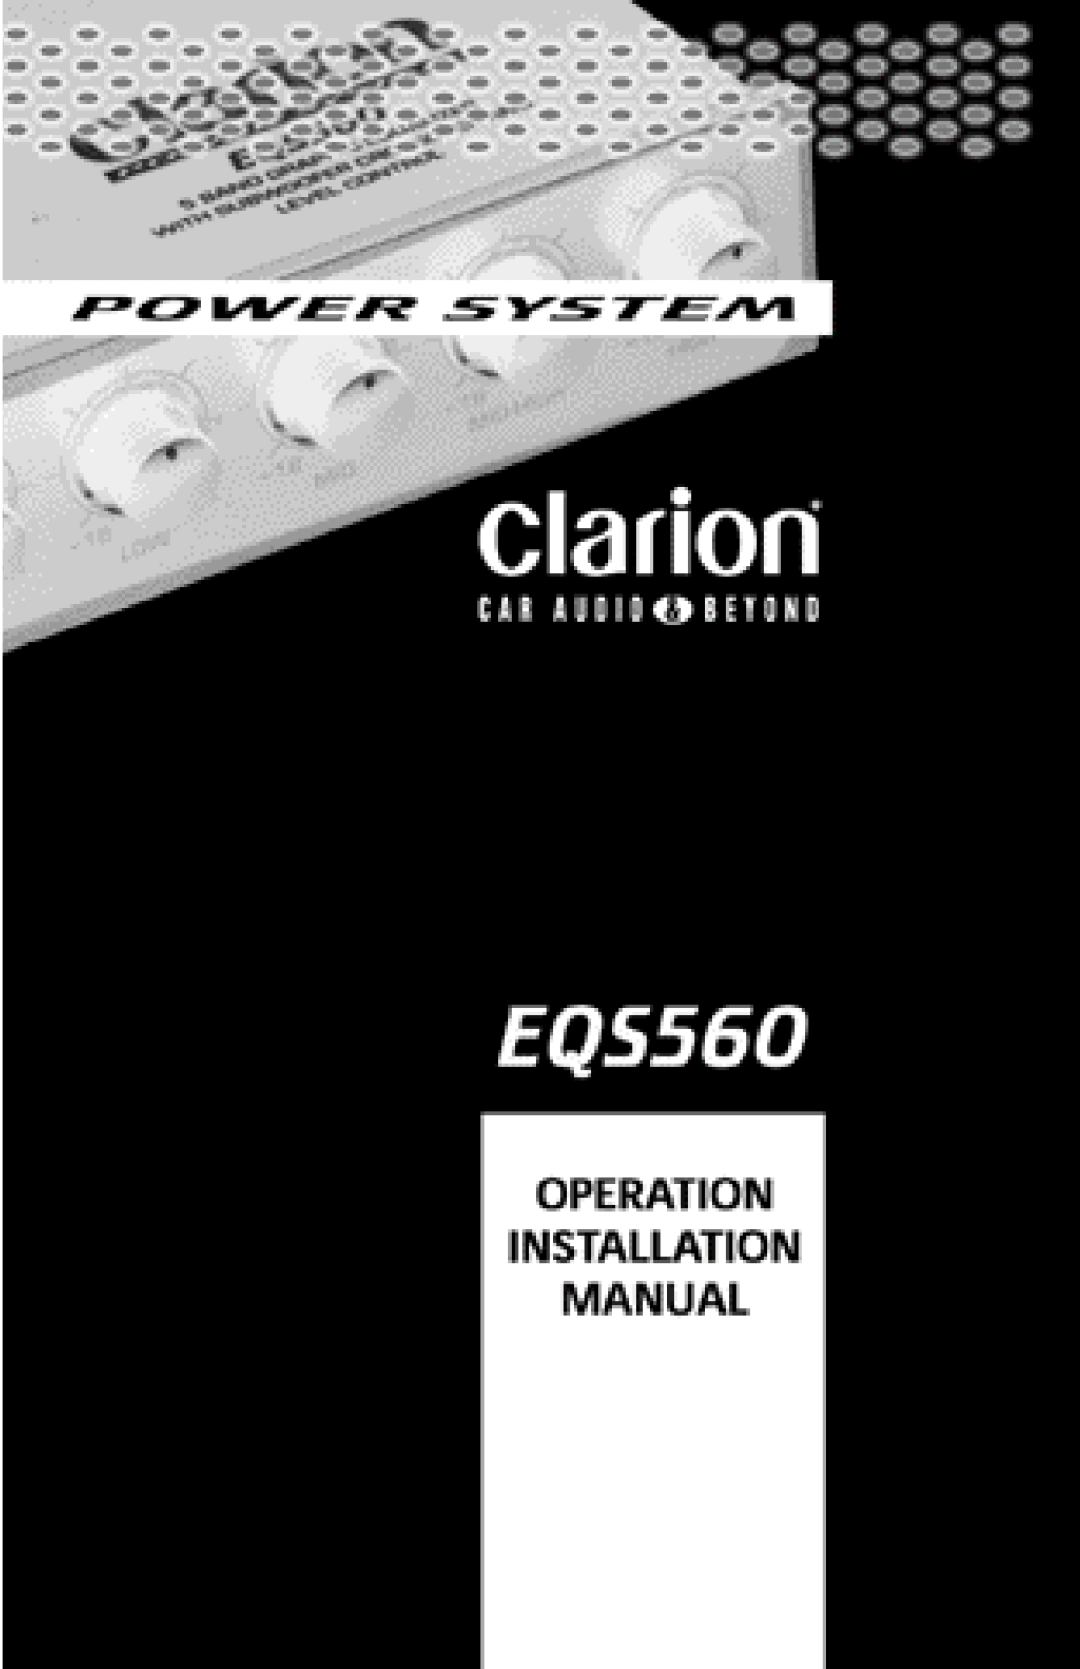 Clarion EQS560 manual 